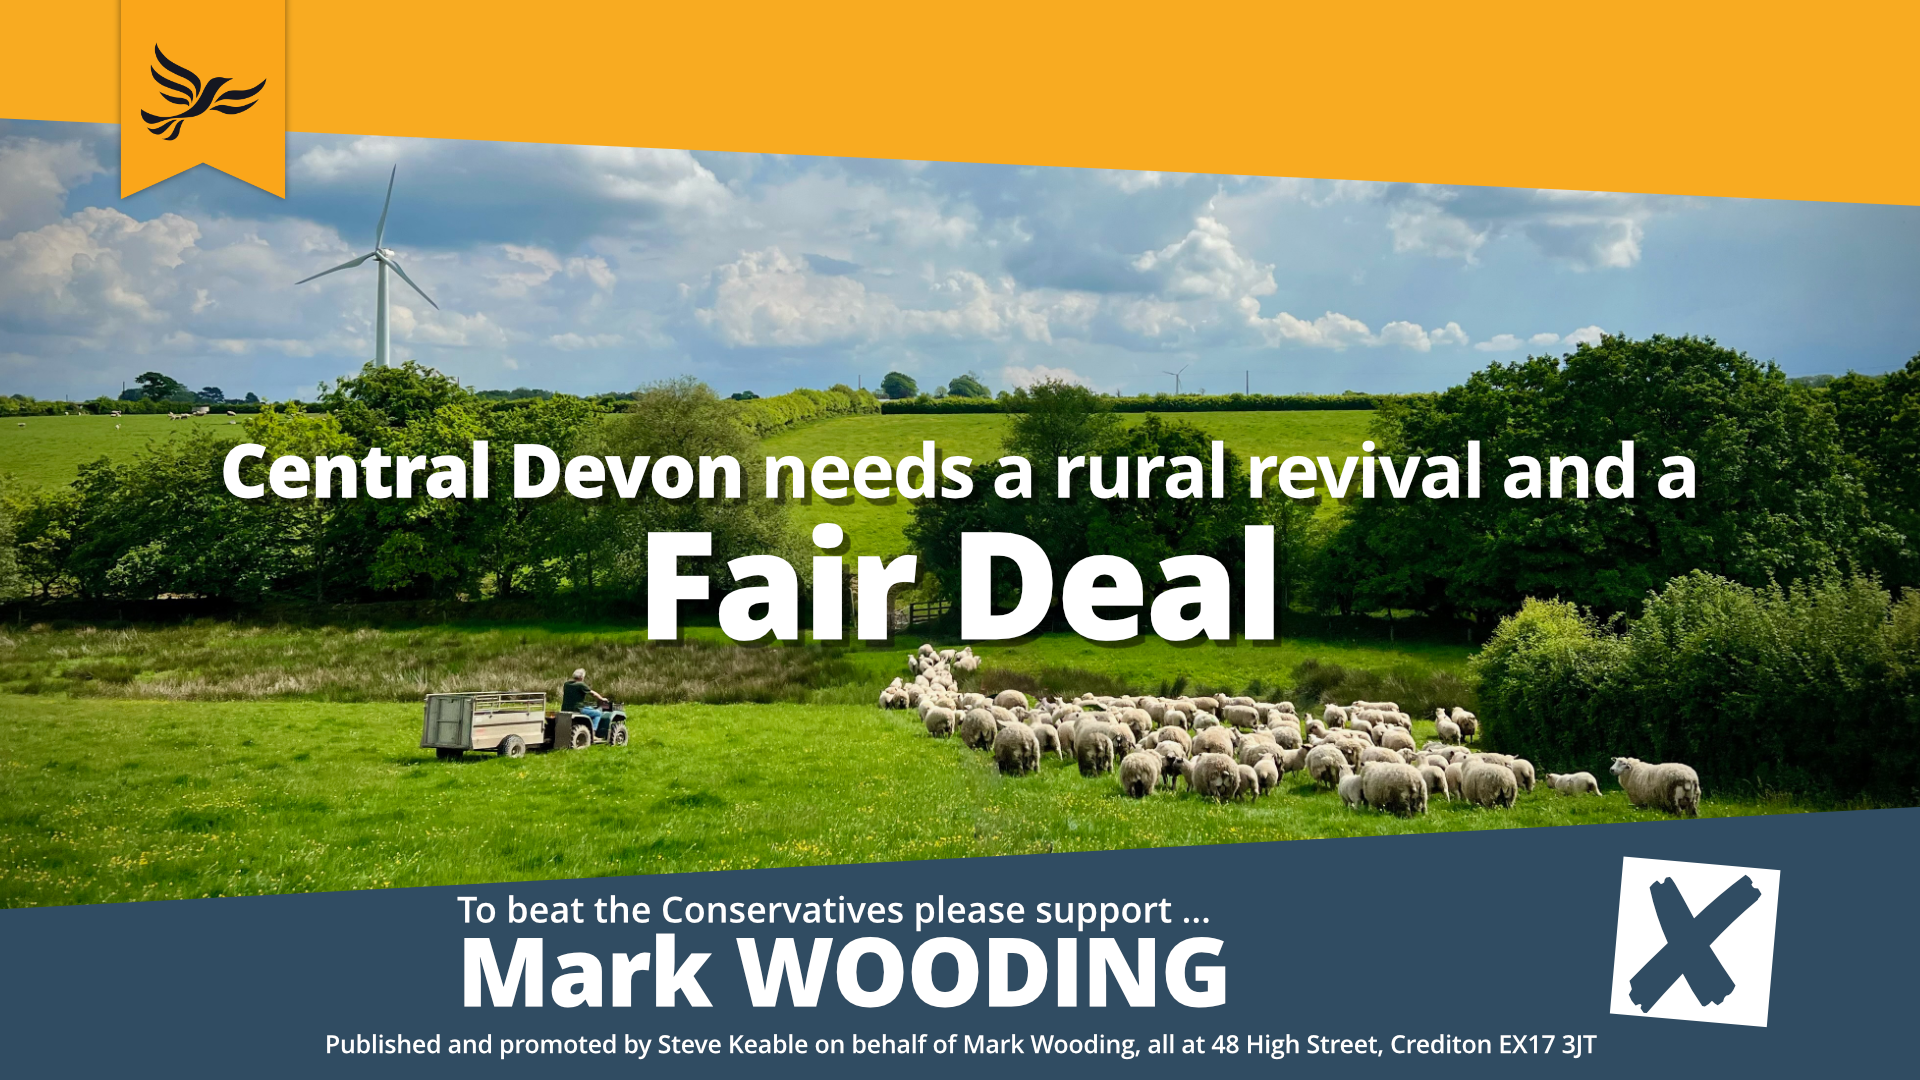 A fair deal for Central Devon